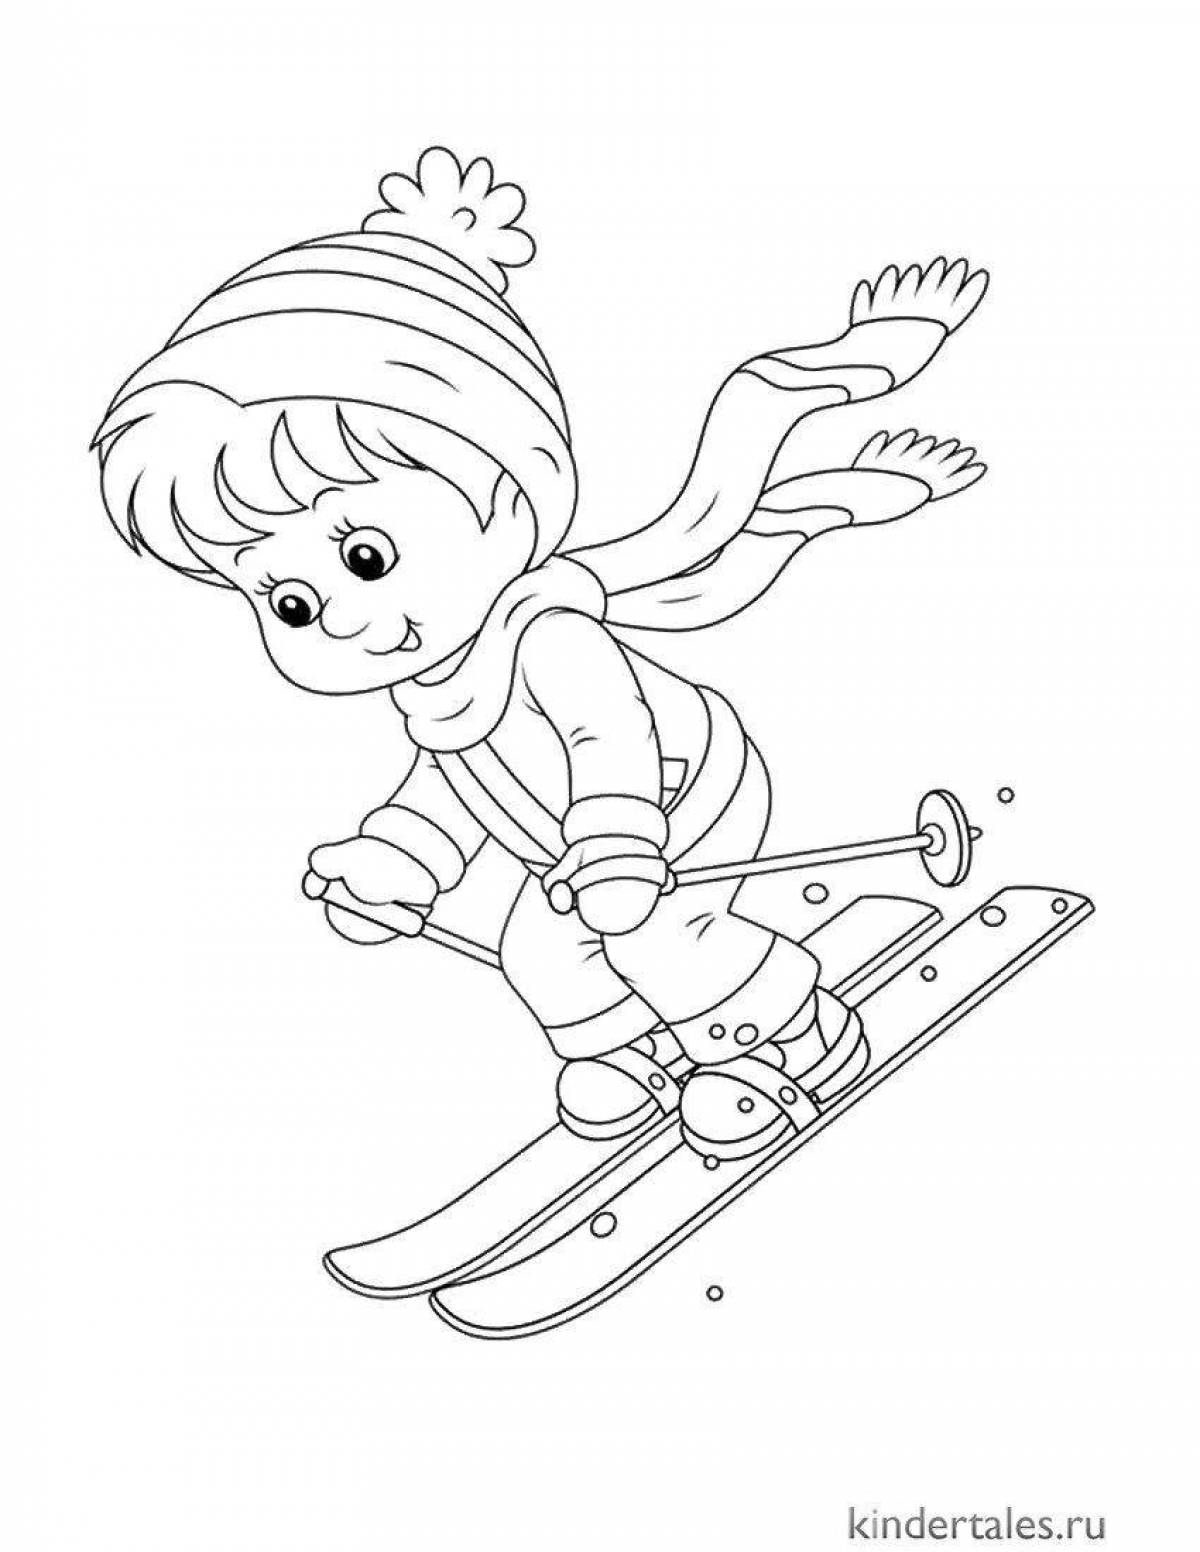 Раскраска энергичный лыжник для детей 5-6 лет